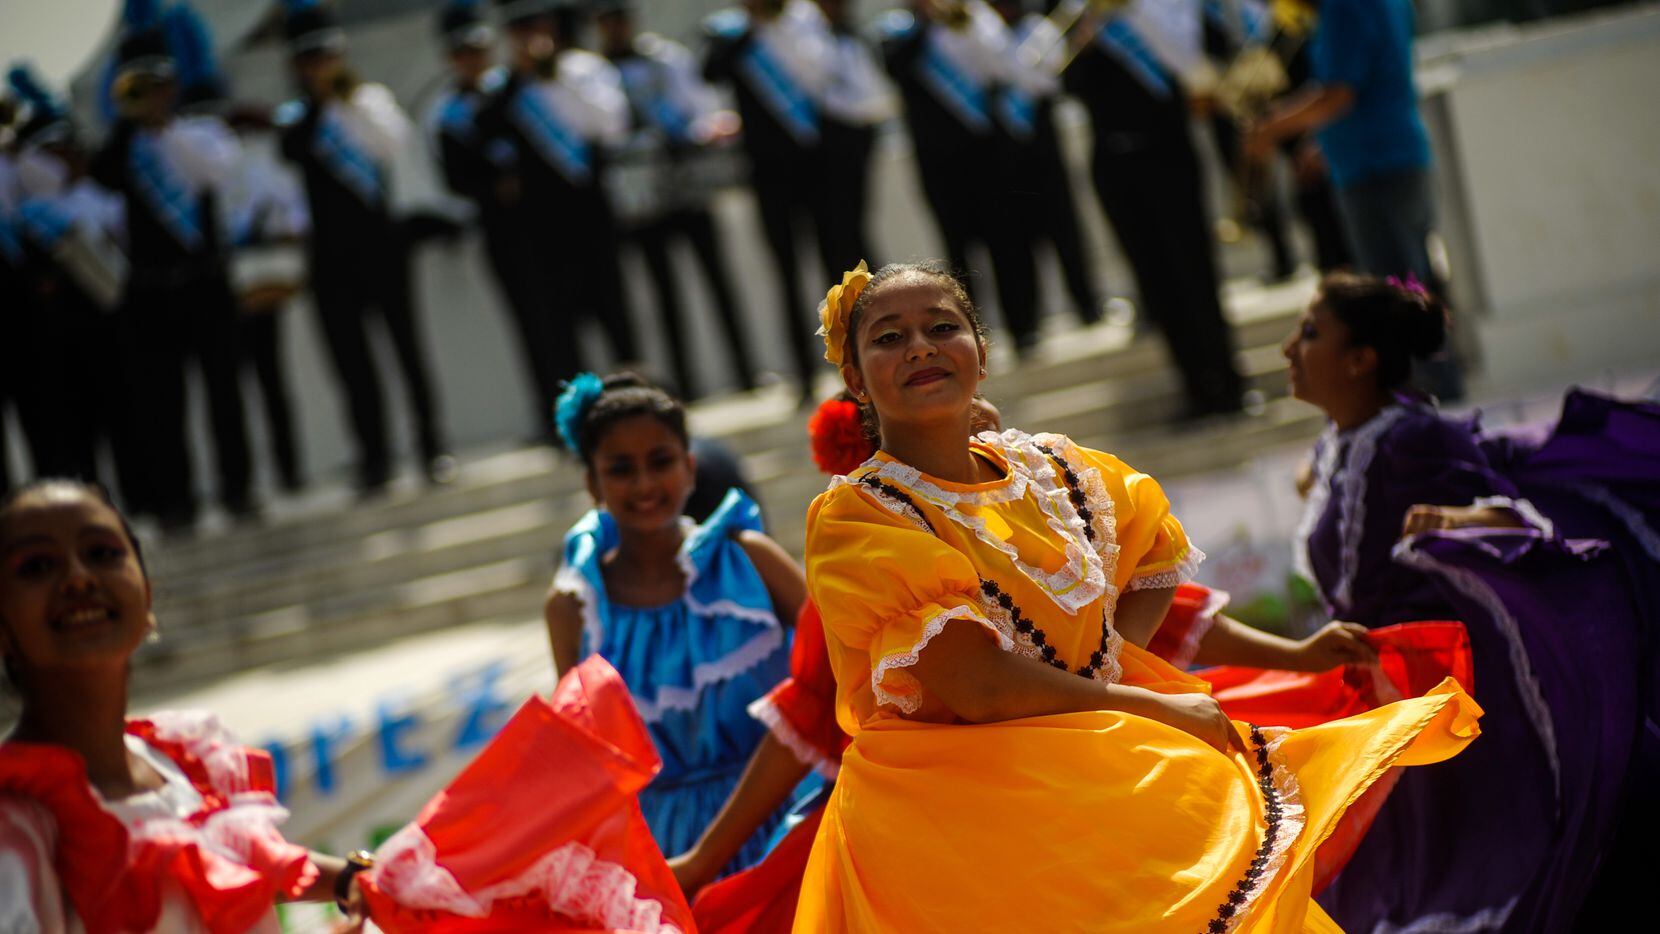 Mujeres danzando con vestimentas tradicionales de El Salvador. Foto de archivo.